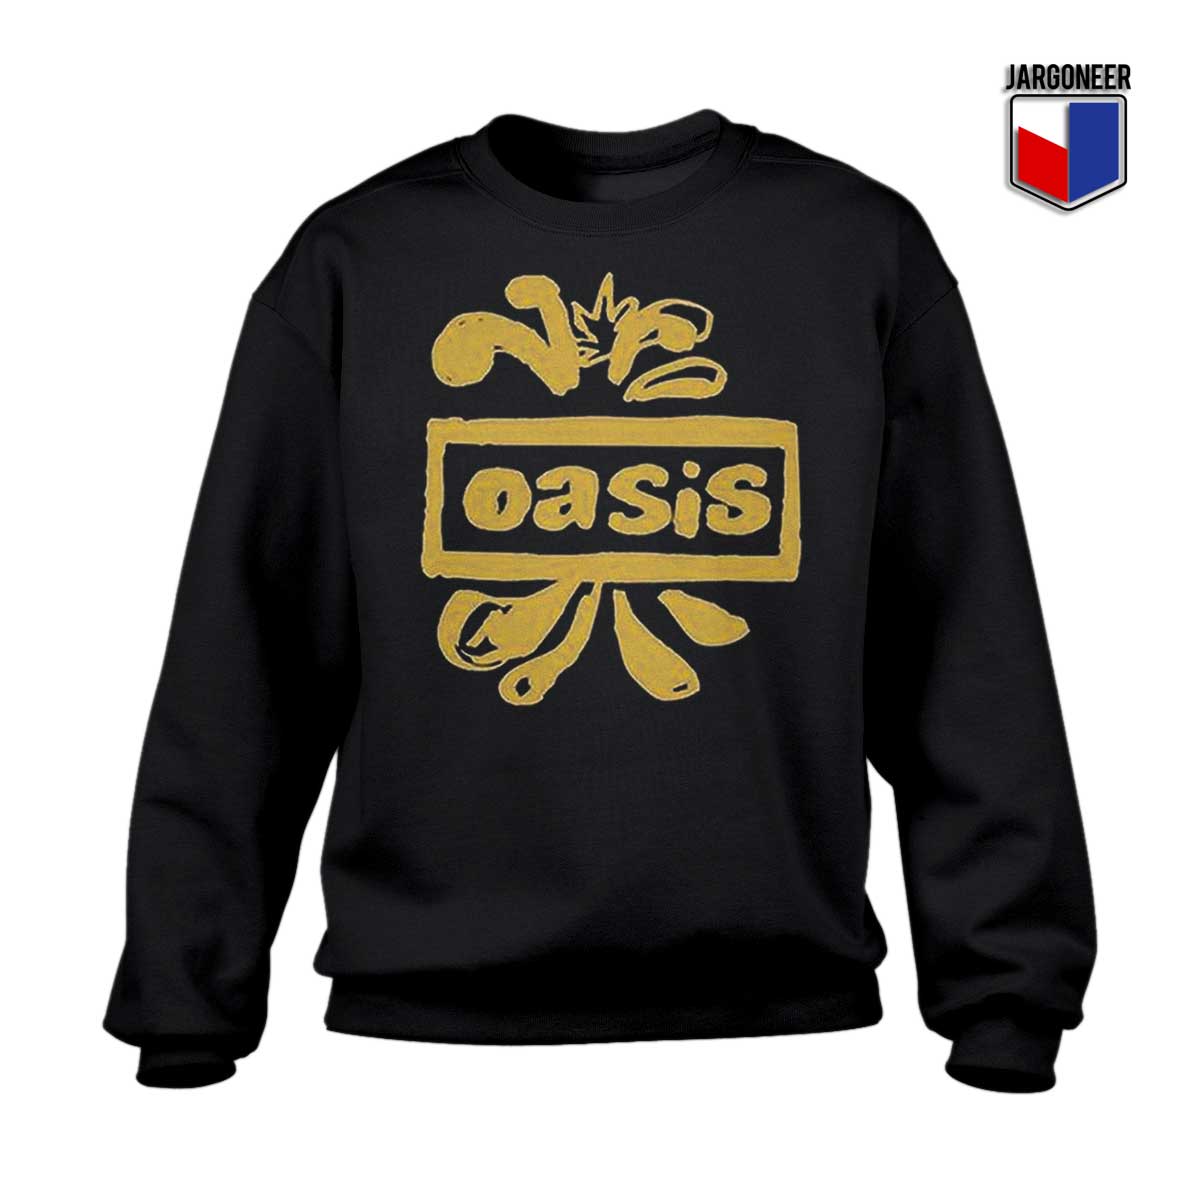 Oasis Decca Logo Sweatshirt - Shop Unique Graphic Cool Shirt Designs